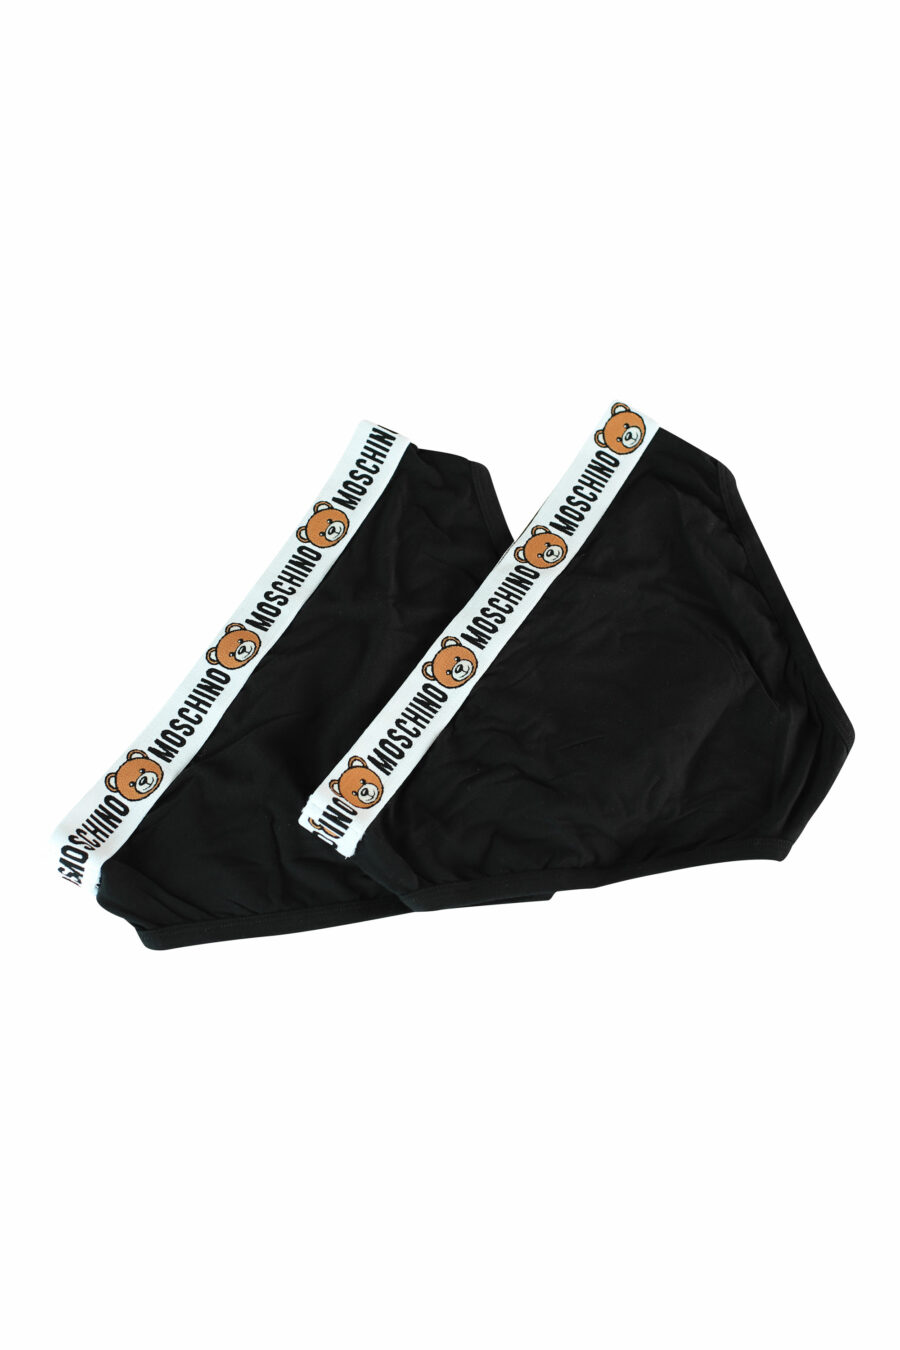 Pack de dos calzoncillos negros con logo oso en cinturilla - 889316228076 2